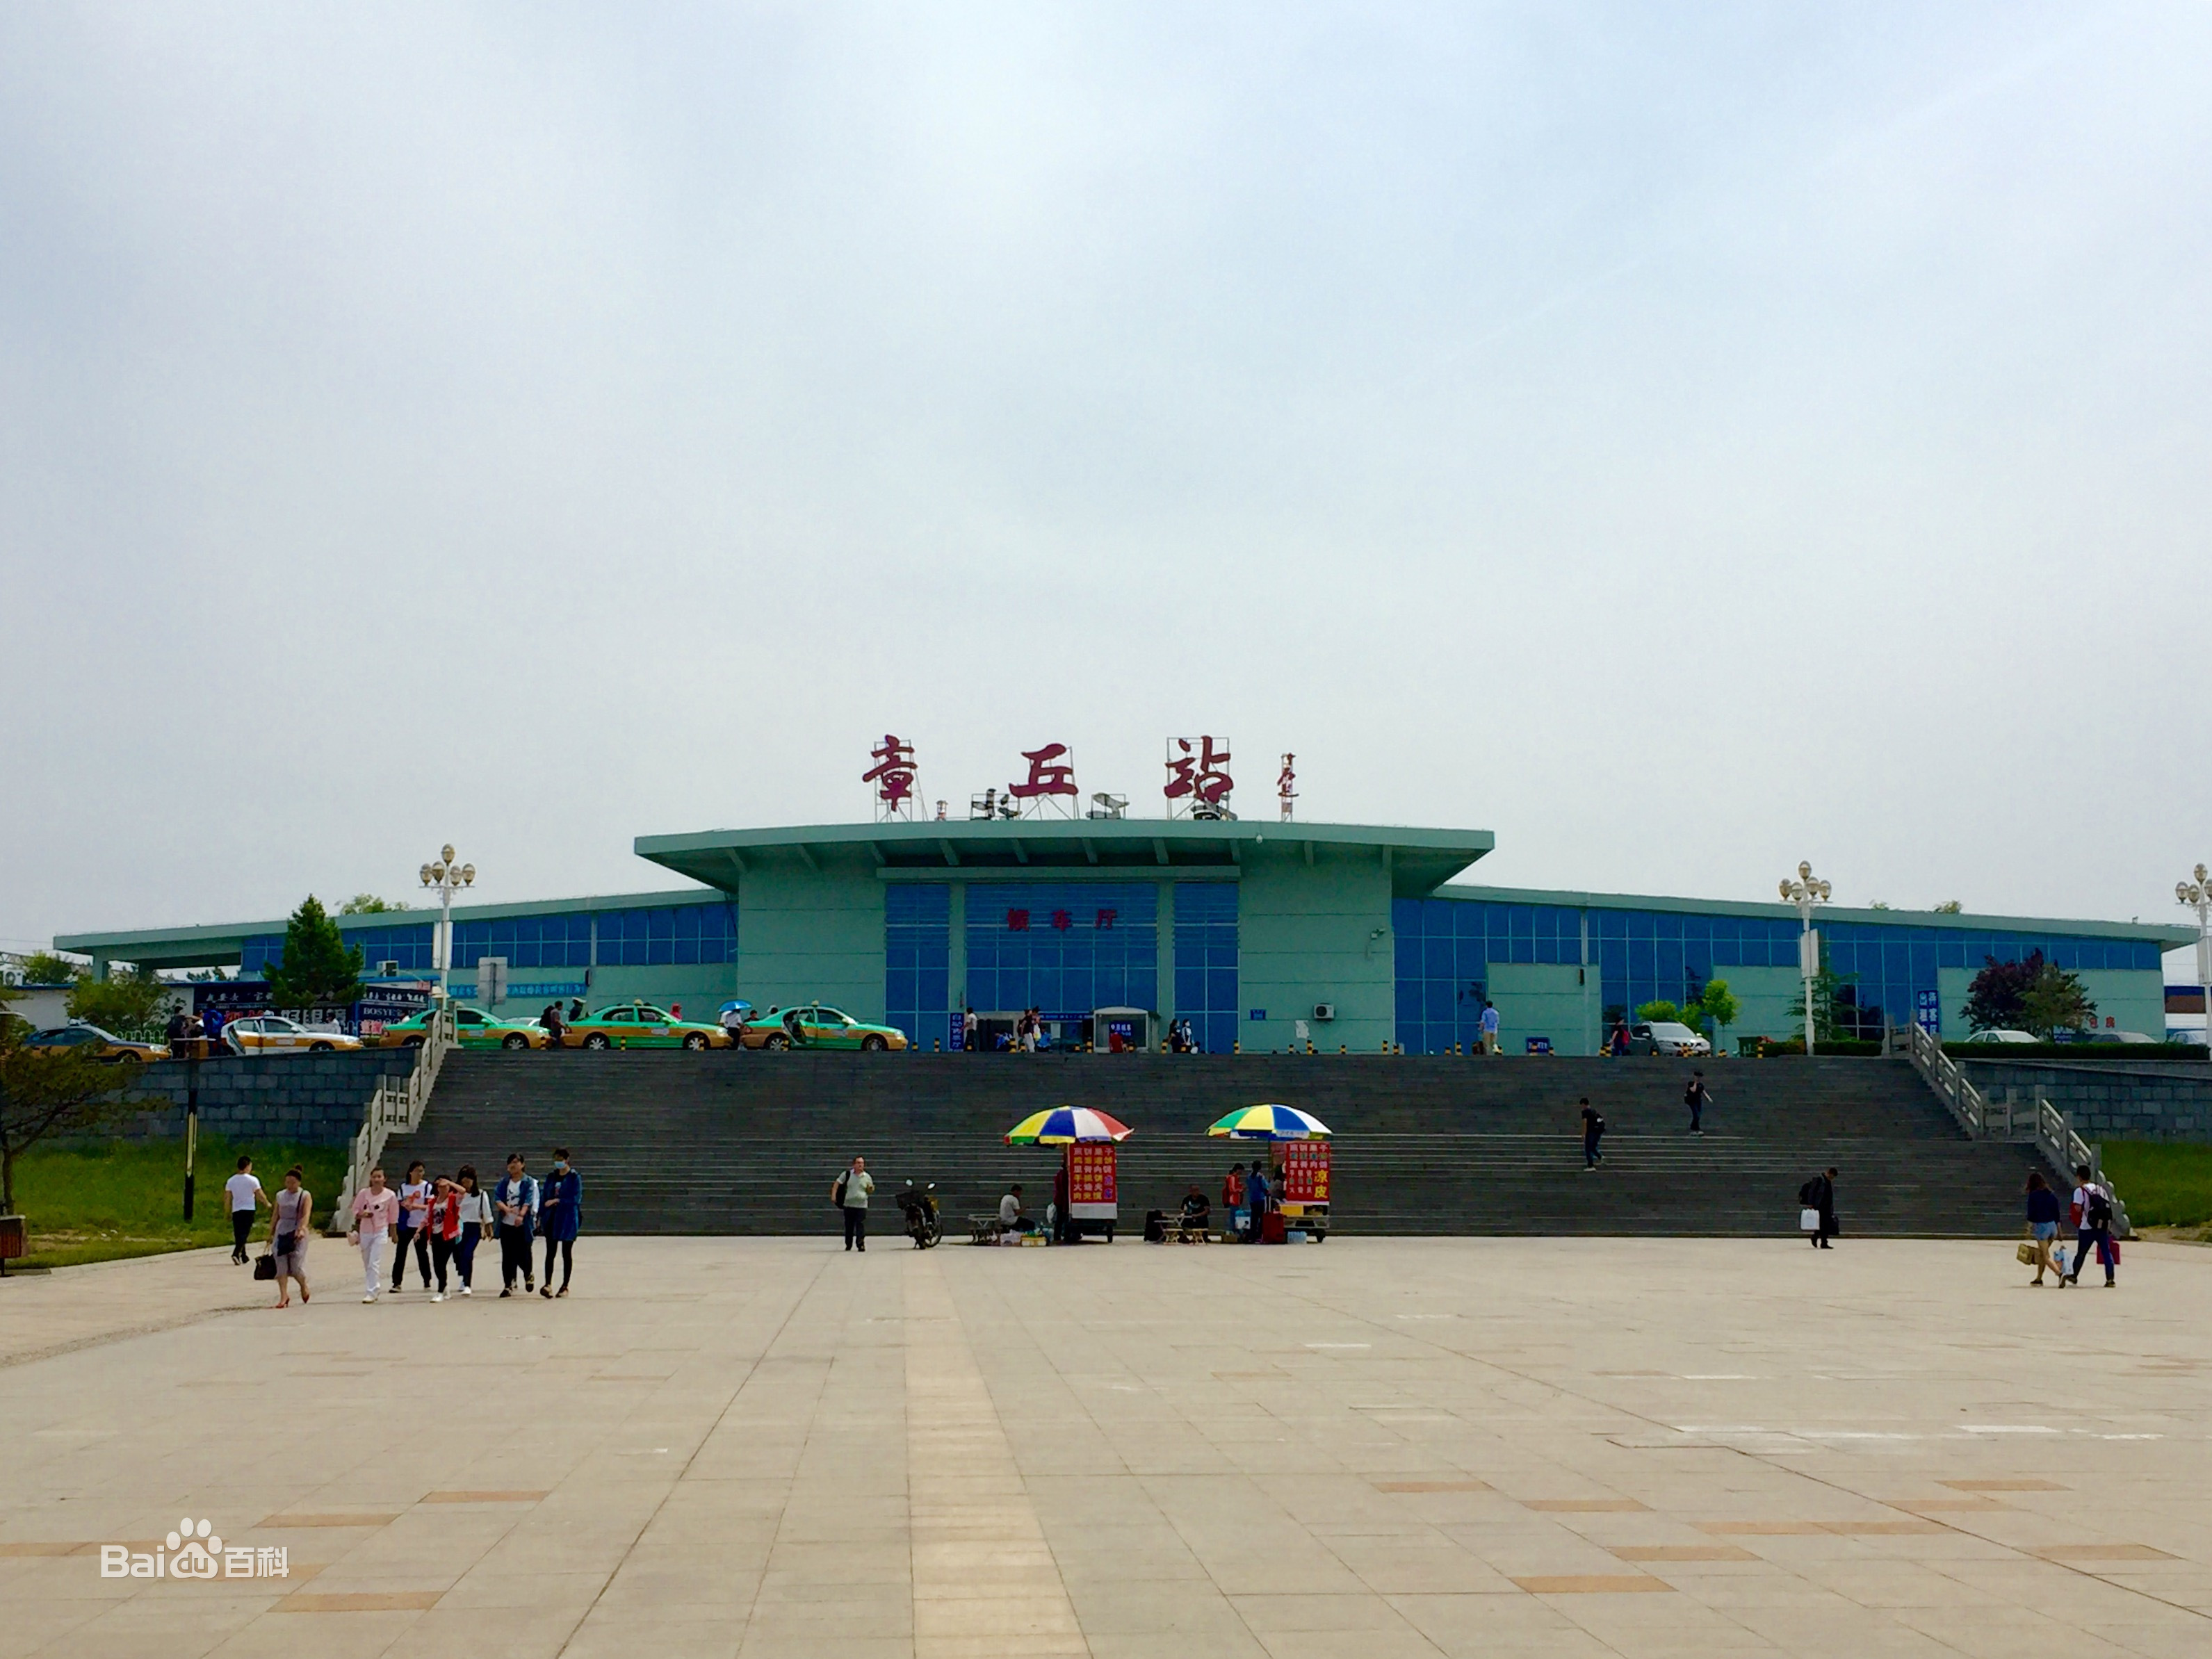 章丘南站 章丘南站,济莱高速铁路的中间站,隶属于中国铁路济南局集团